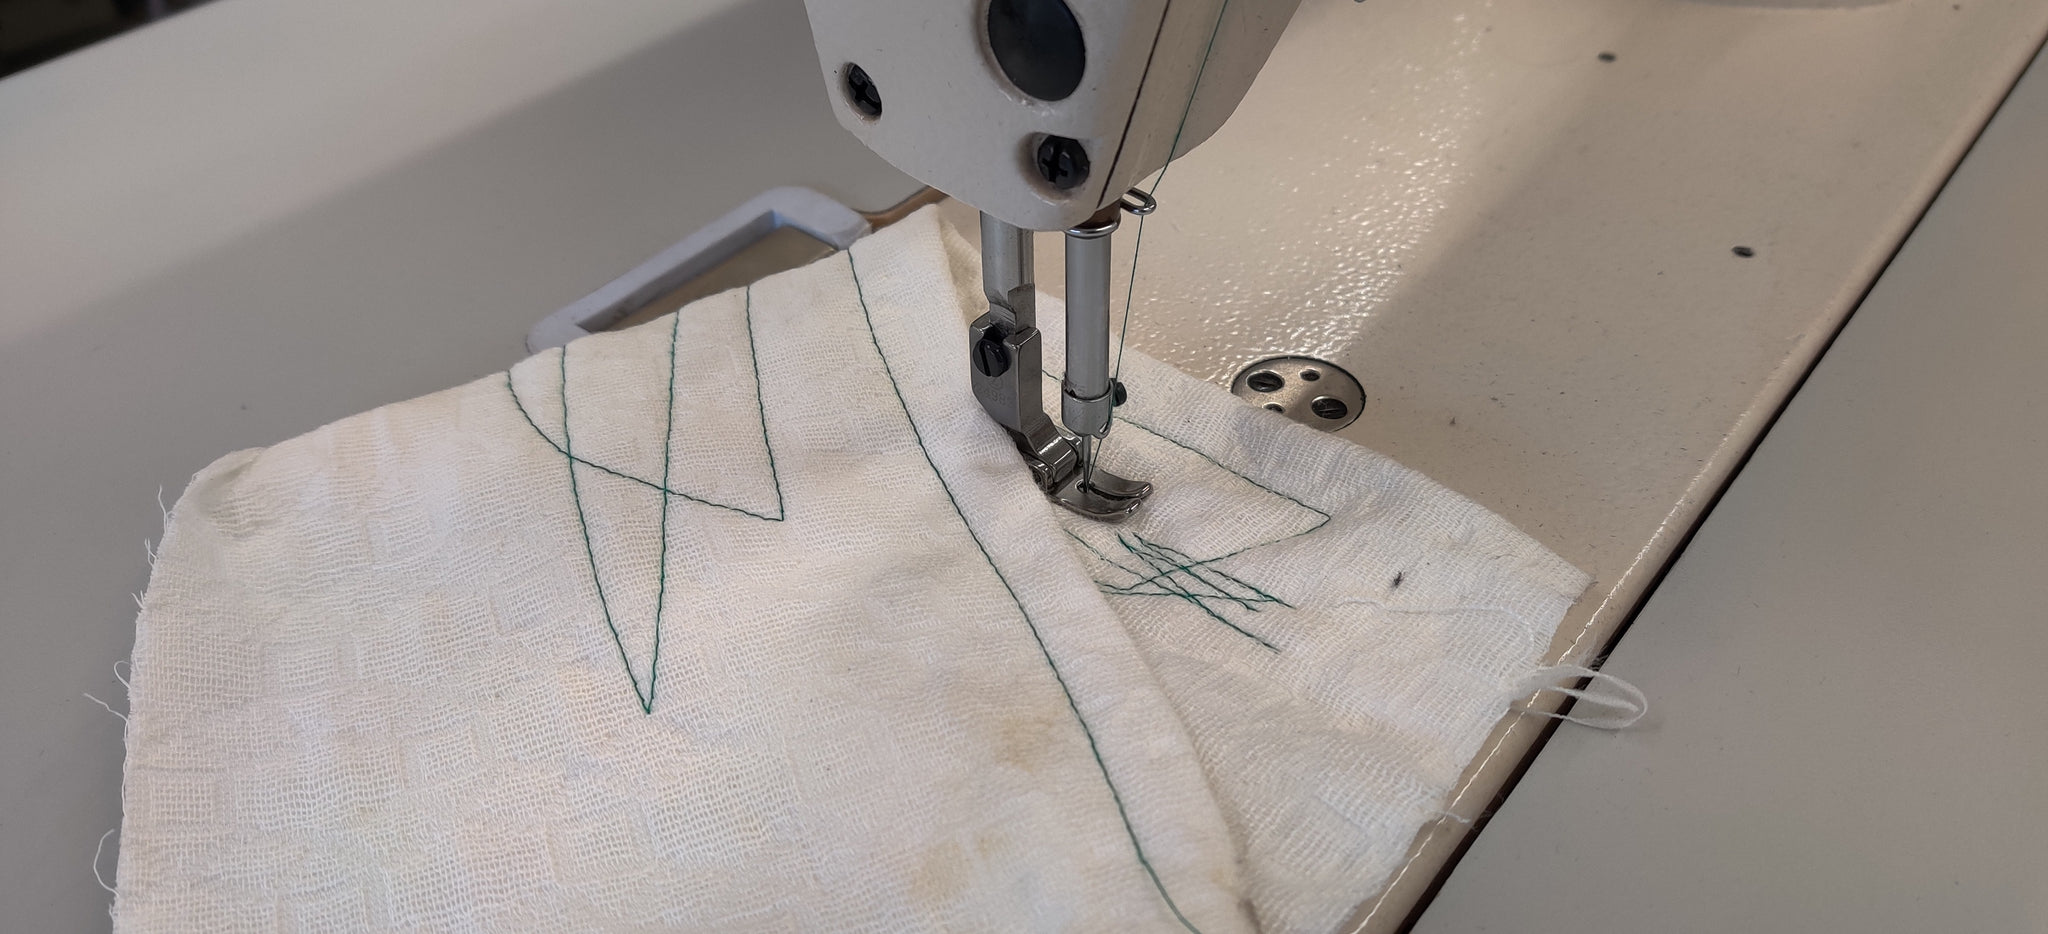 Juki DDL-8700 Single Needle Lockstitch Sewing Machine